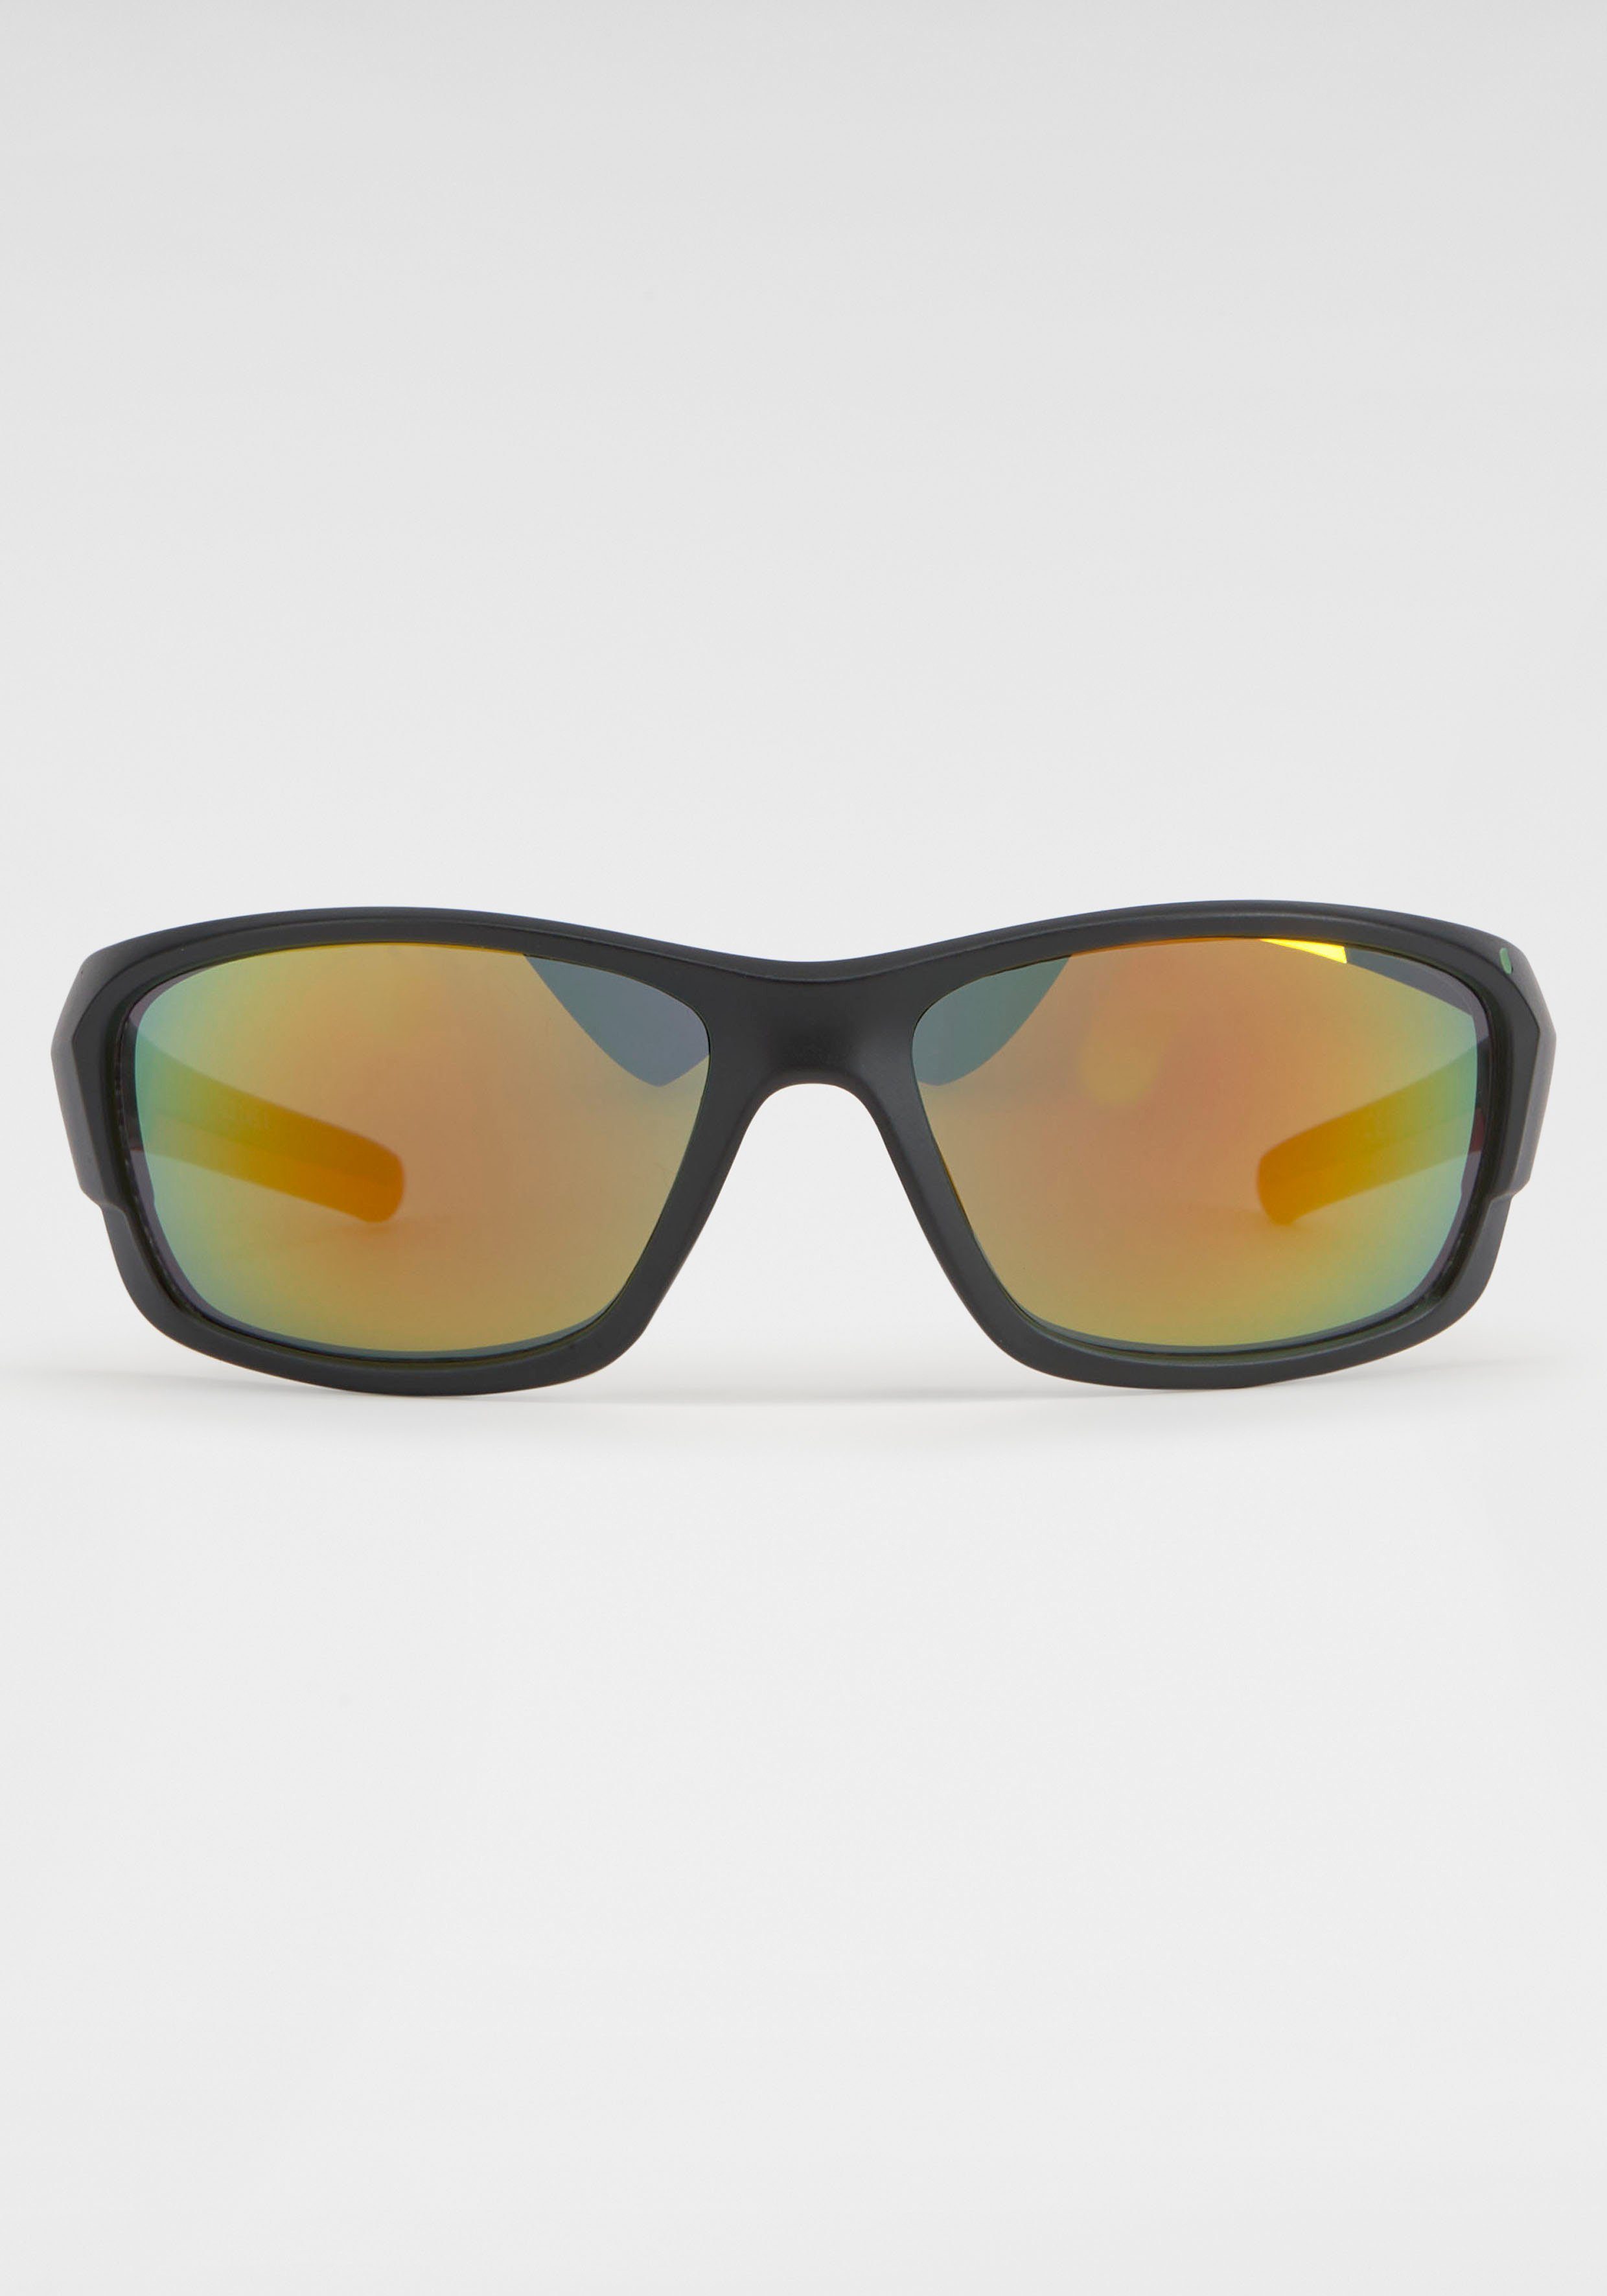 BACK BLACK mit Sonnenbrille Eyewear Gläsern IN verspiegelten